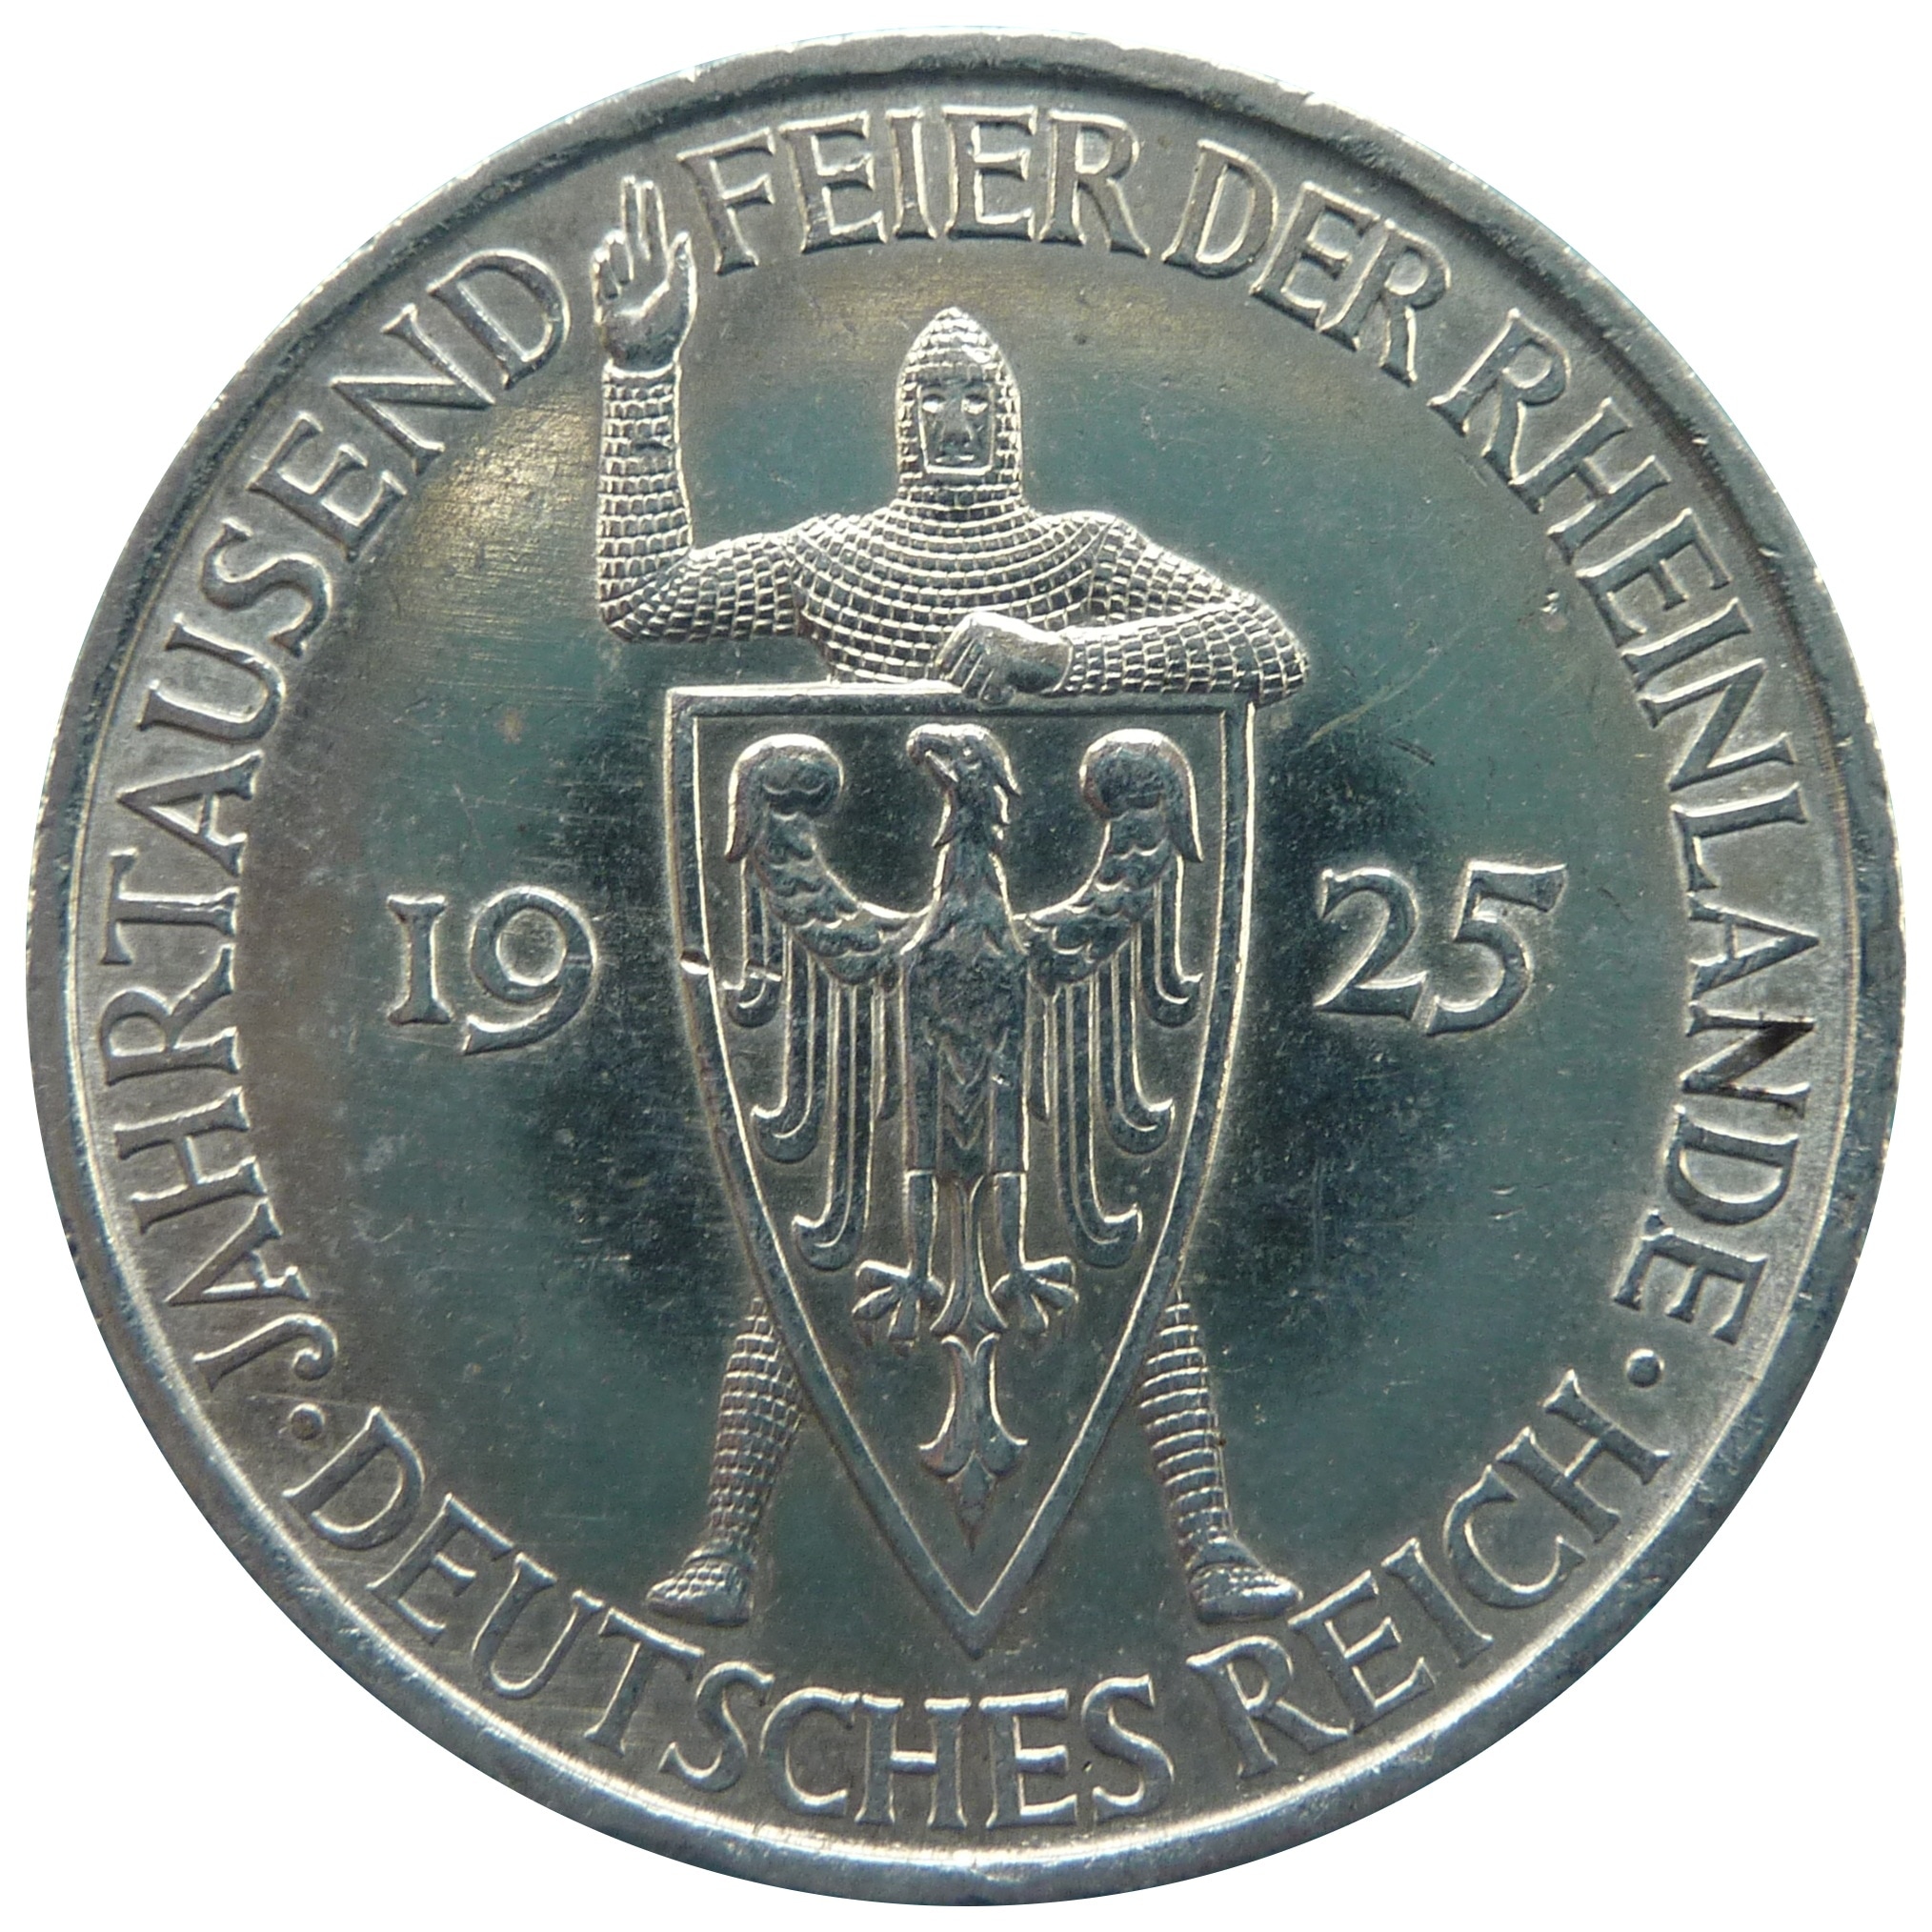 silver feierde rheinlande 1925 coin